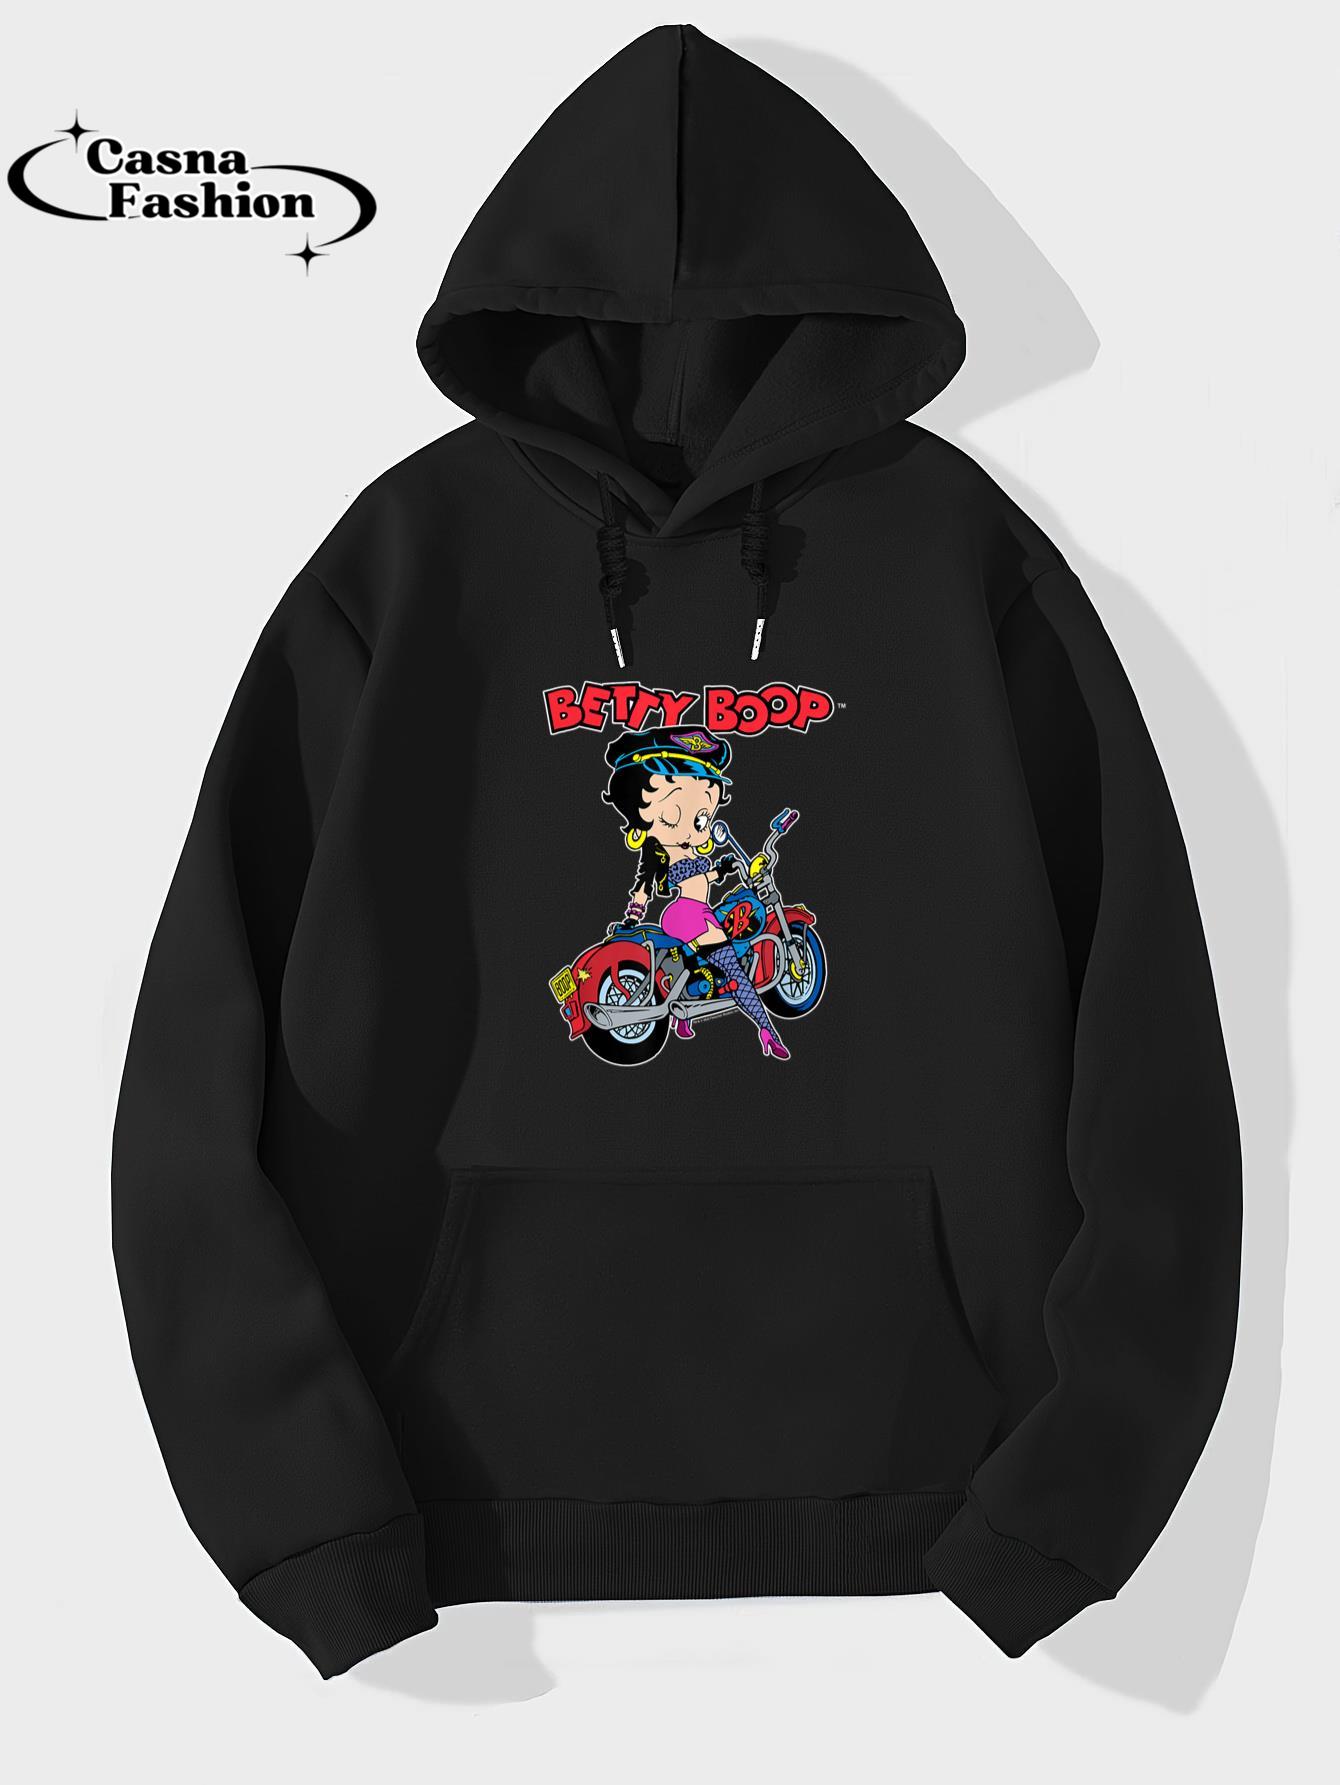 casnafashion_Hoodie_Betty Boop Biker Outfit Motorcycle Pose T-Shirt_hoodie_black hoodie